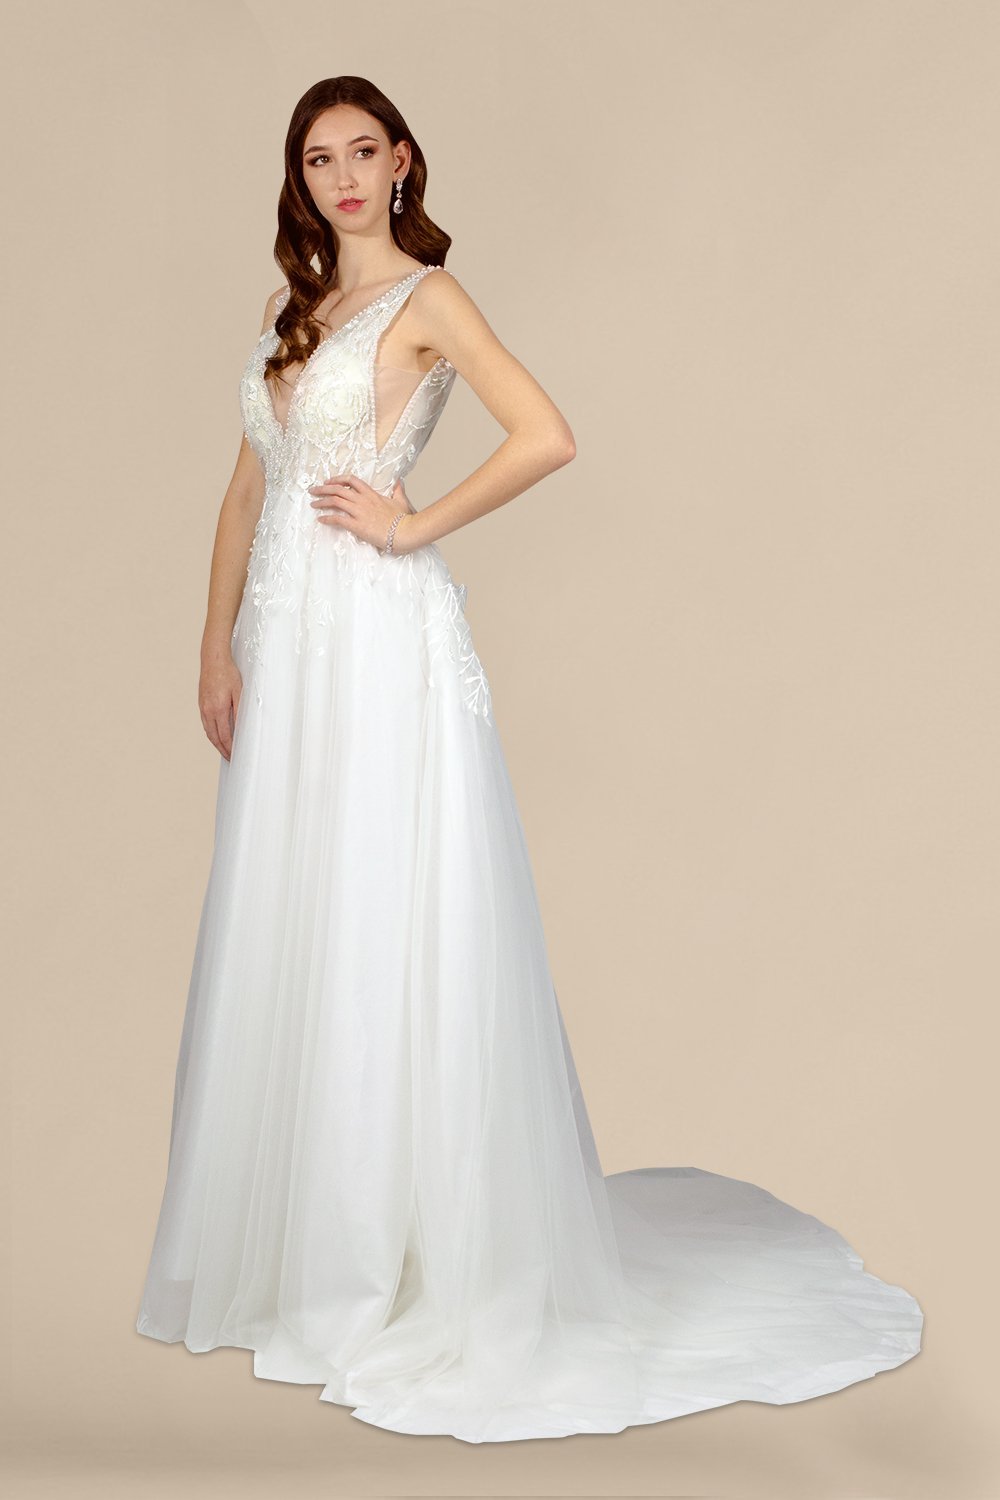 custom wedding ivory dresses perth australia envious bridal & formal 